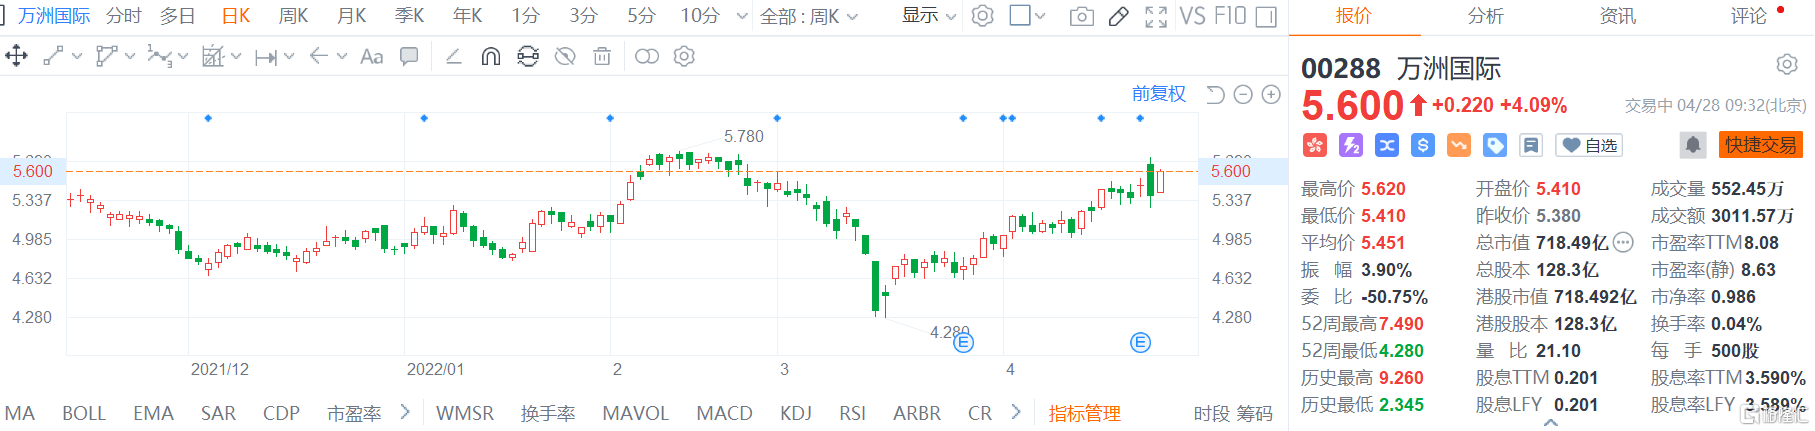 万洲国际(0288.HK)股价快速拉升 现报5.6港元涨幅4.1%